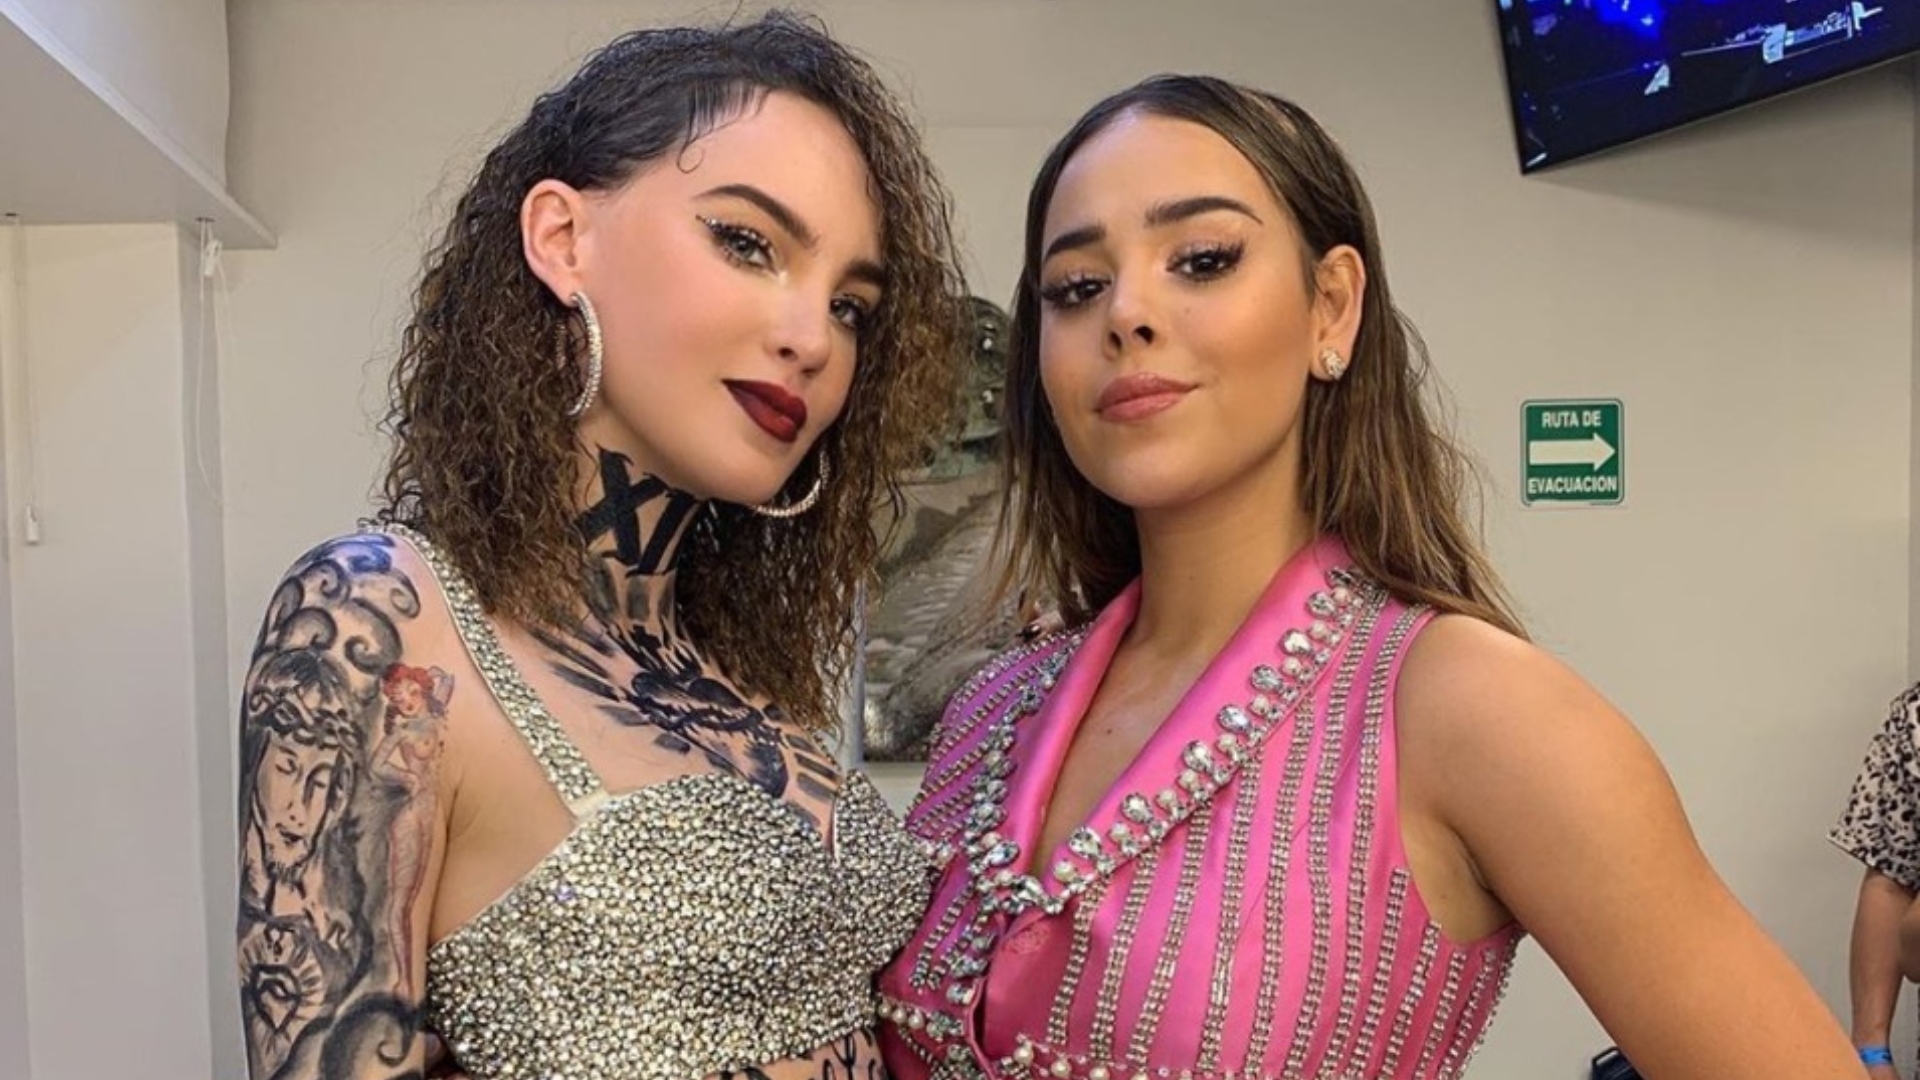 La española confirmó que Gou la invitó a ser parte del musical de "Chicas Pesadas" (Foto: Instagram)